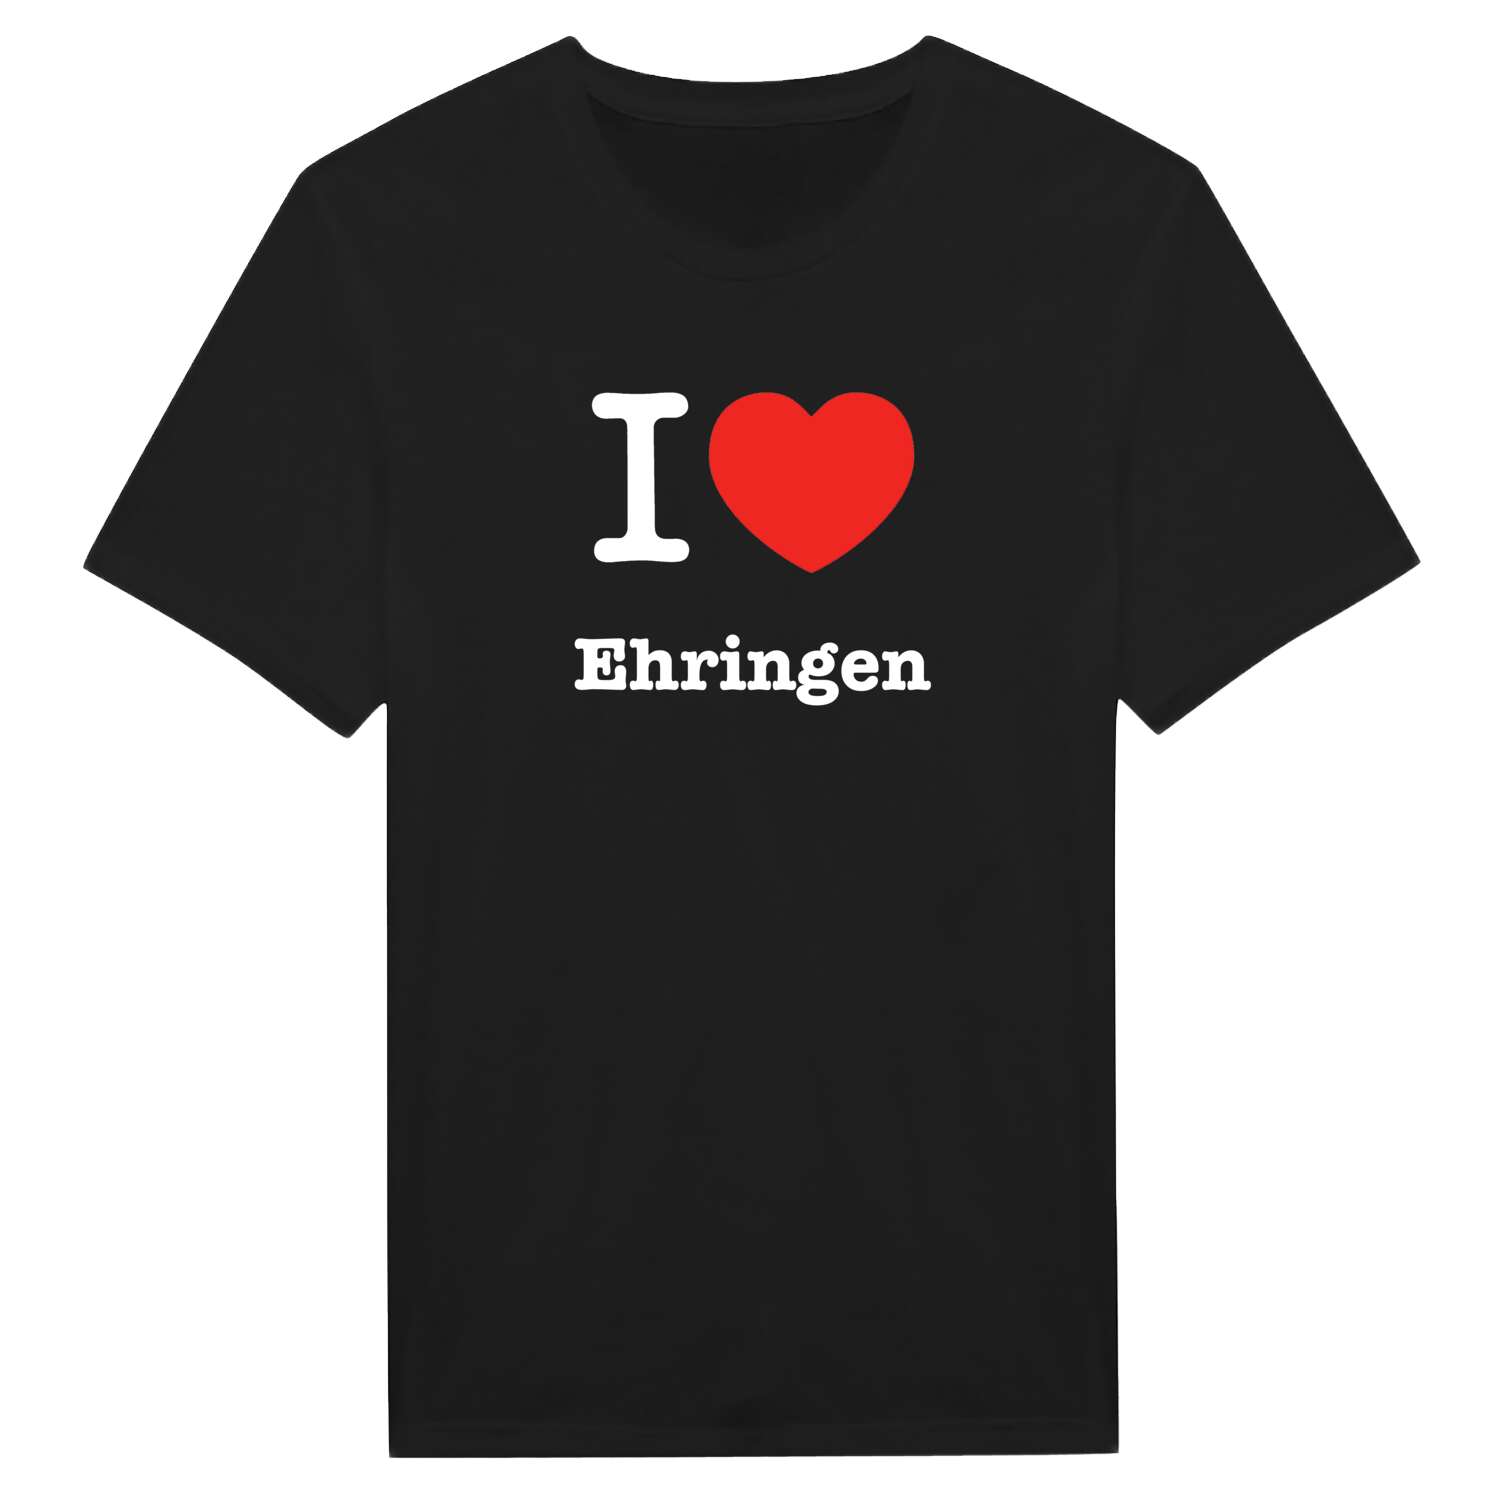 Ehringen T-Shirt »I love«